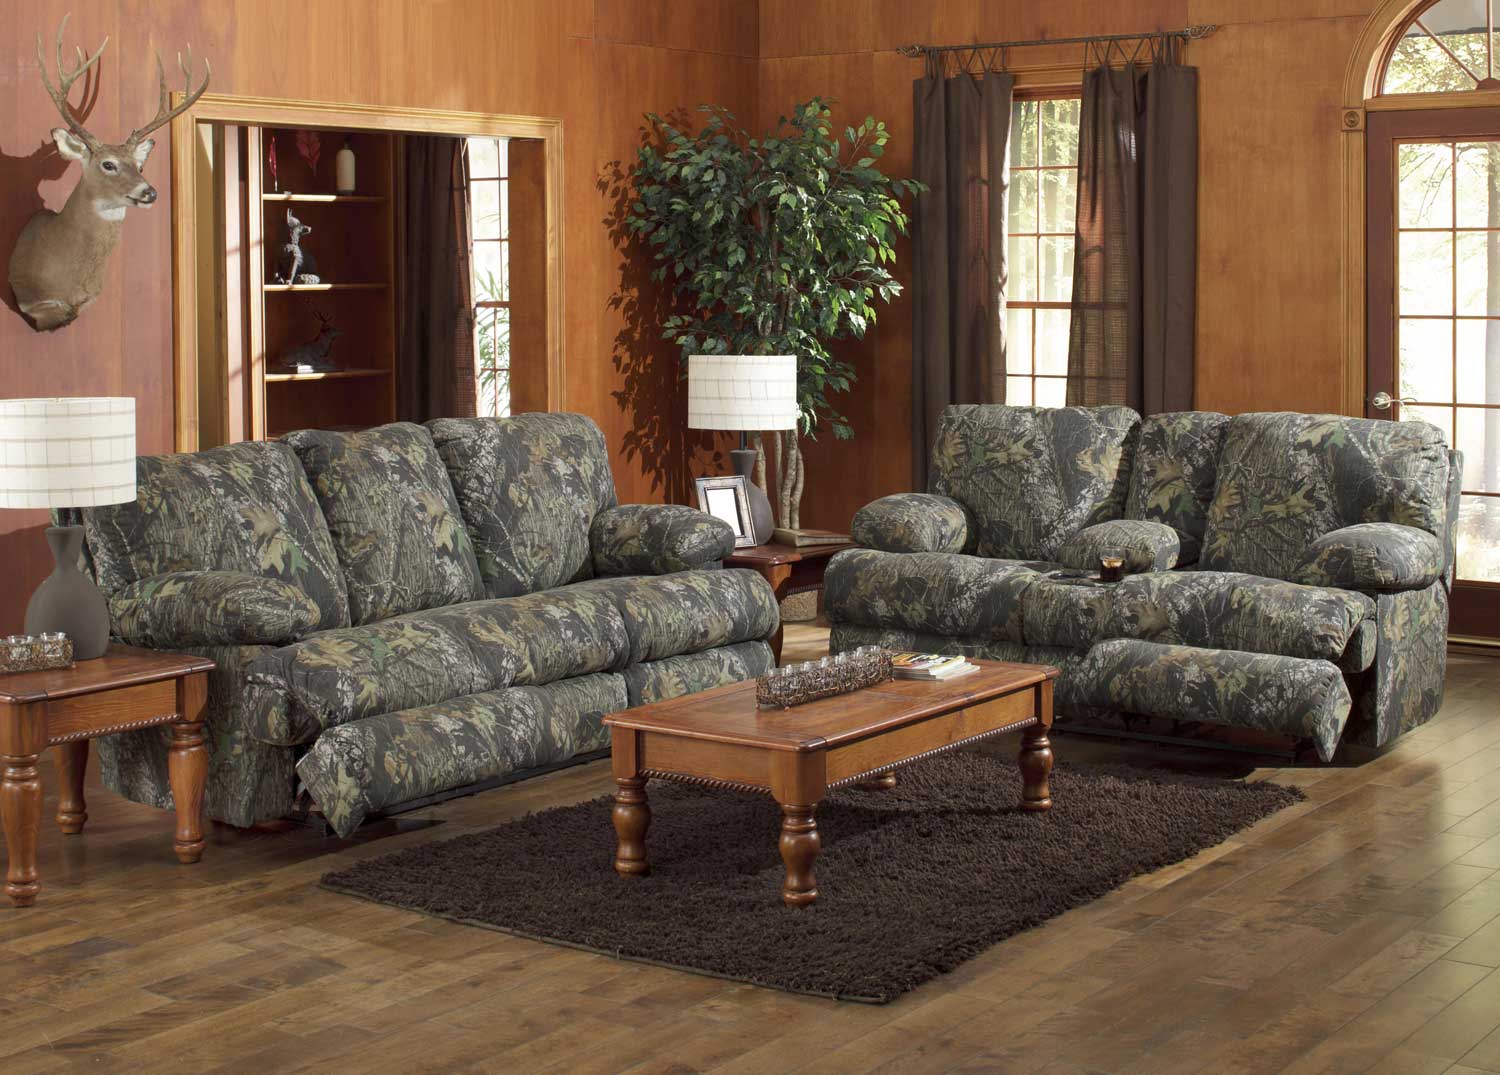 CatNapper Wintergreen Reclining Sofa Set - Mossy Oak New Breakup